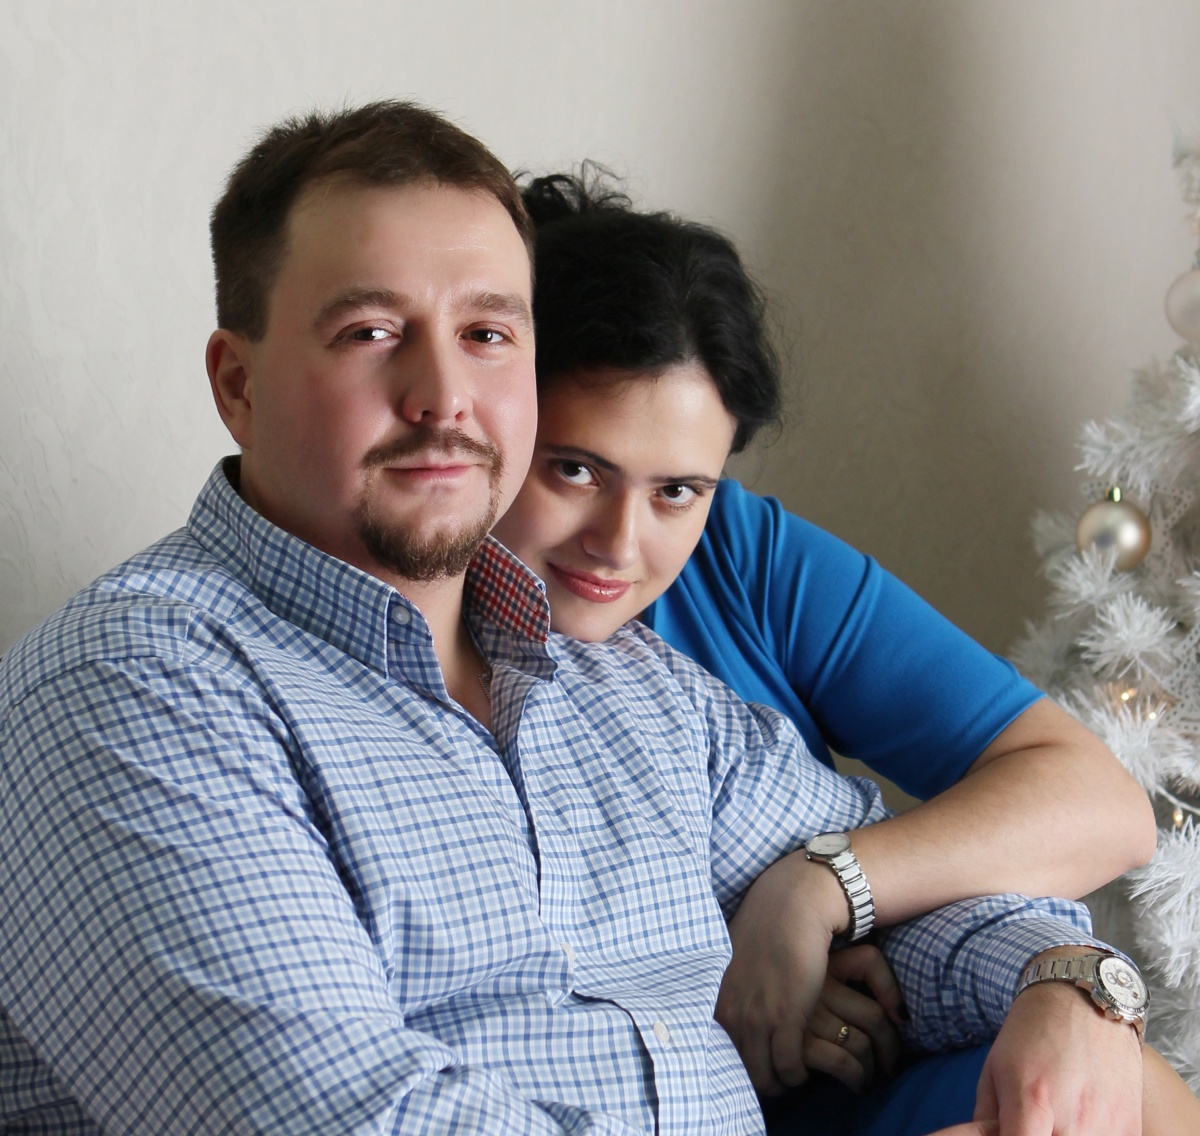 Вера Чурилова и Дмитрий Титов были вместе 13 лет — оба медики, они хорошо понимали друг друга